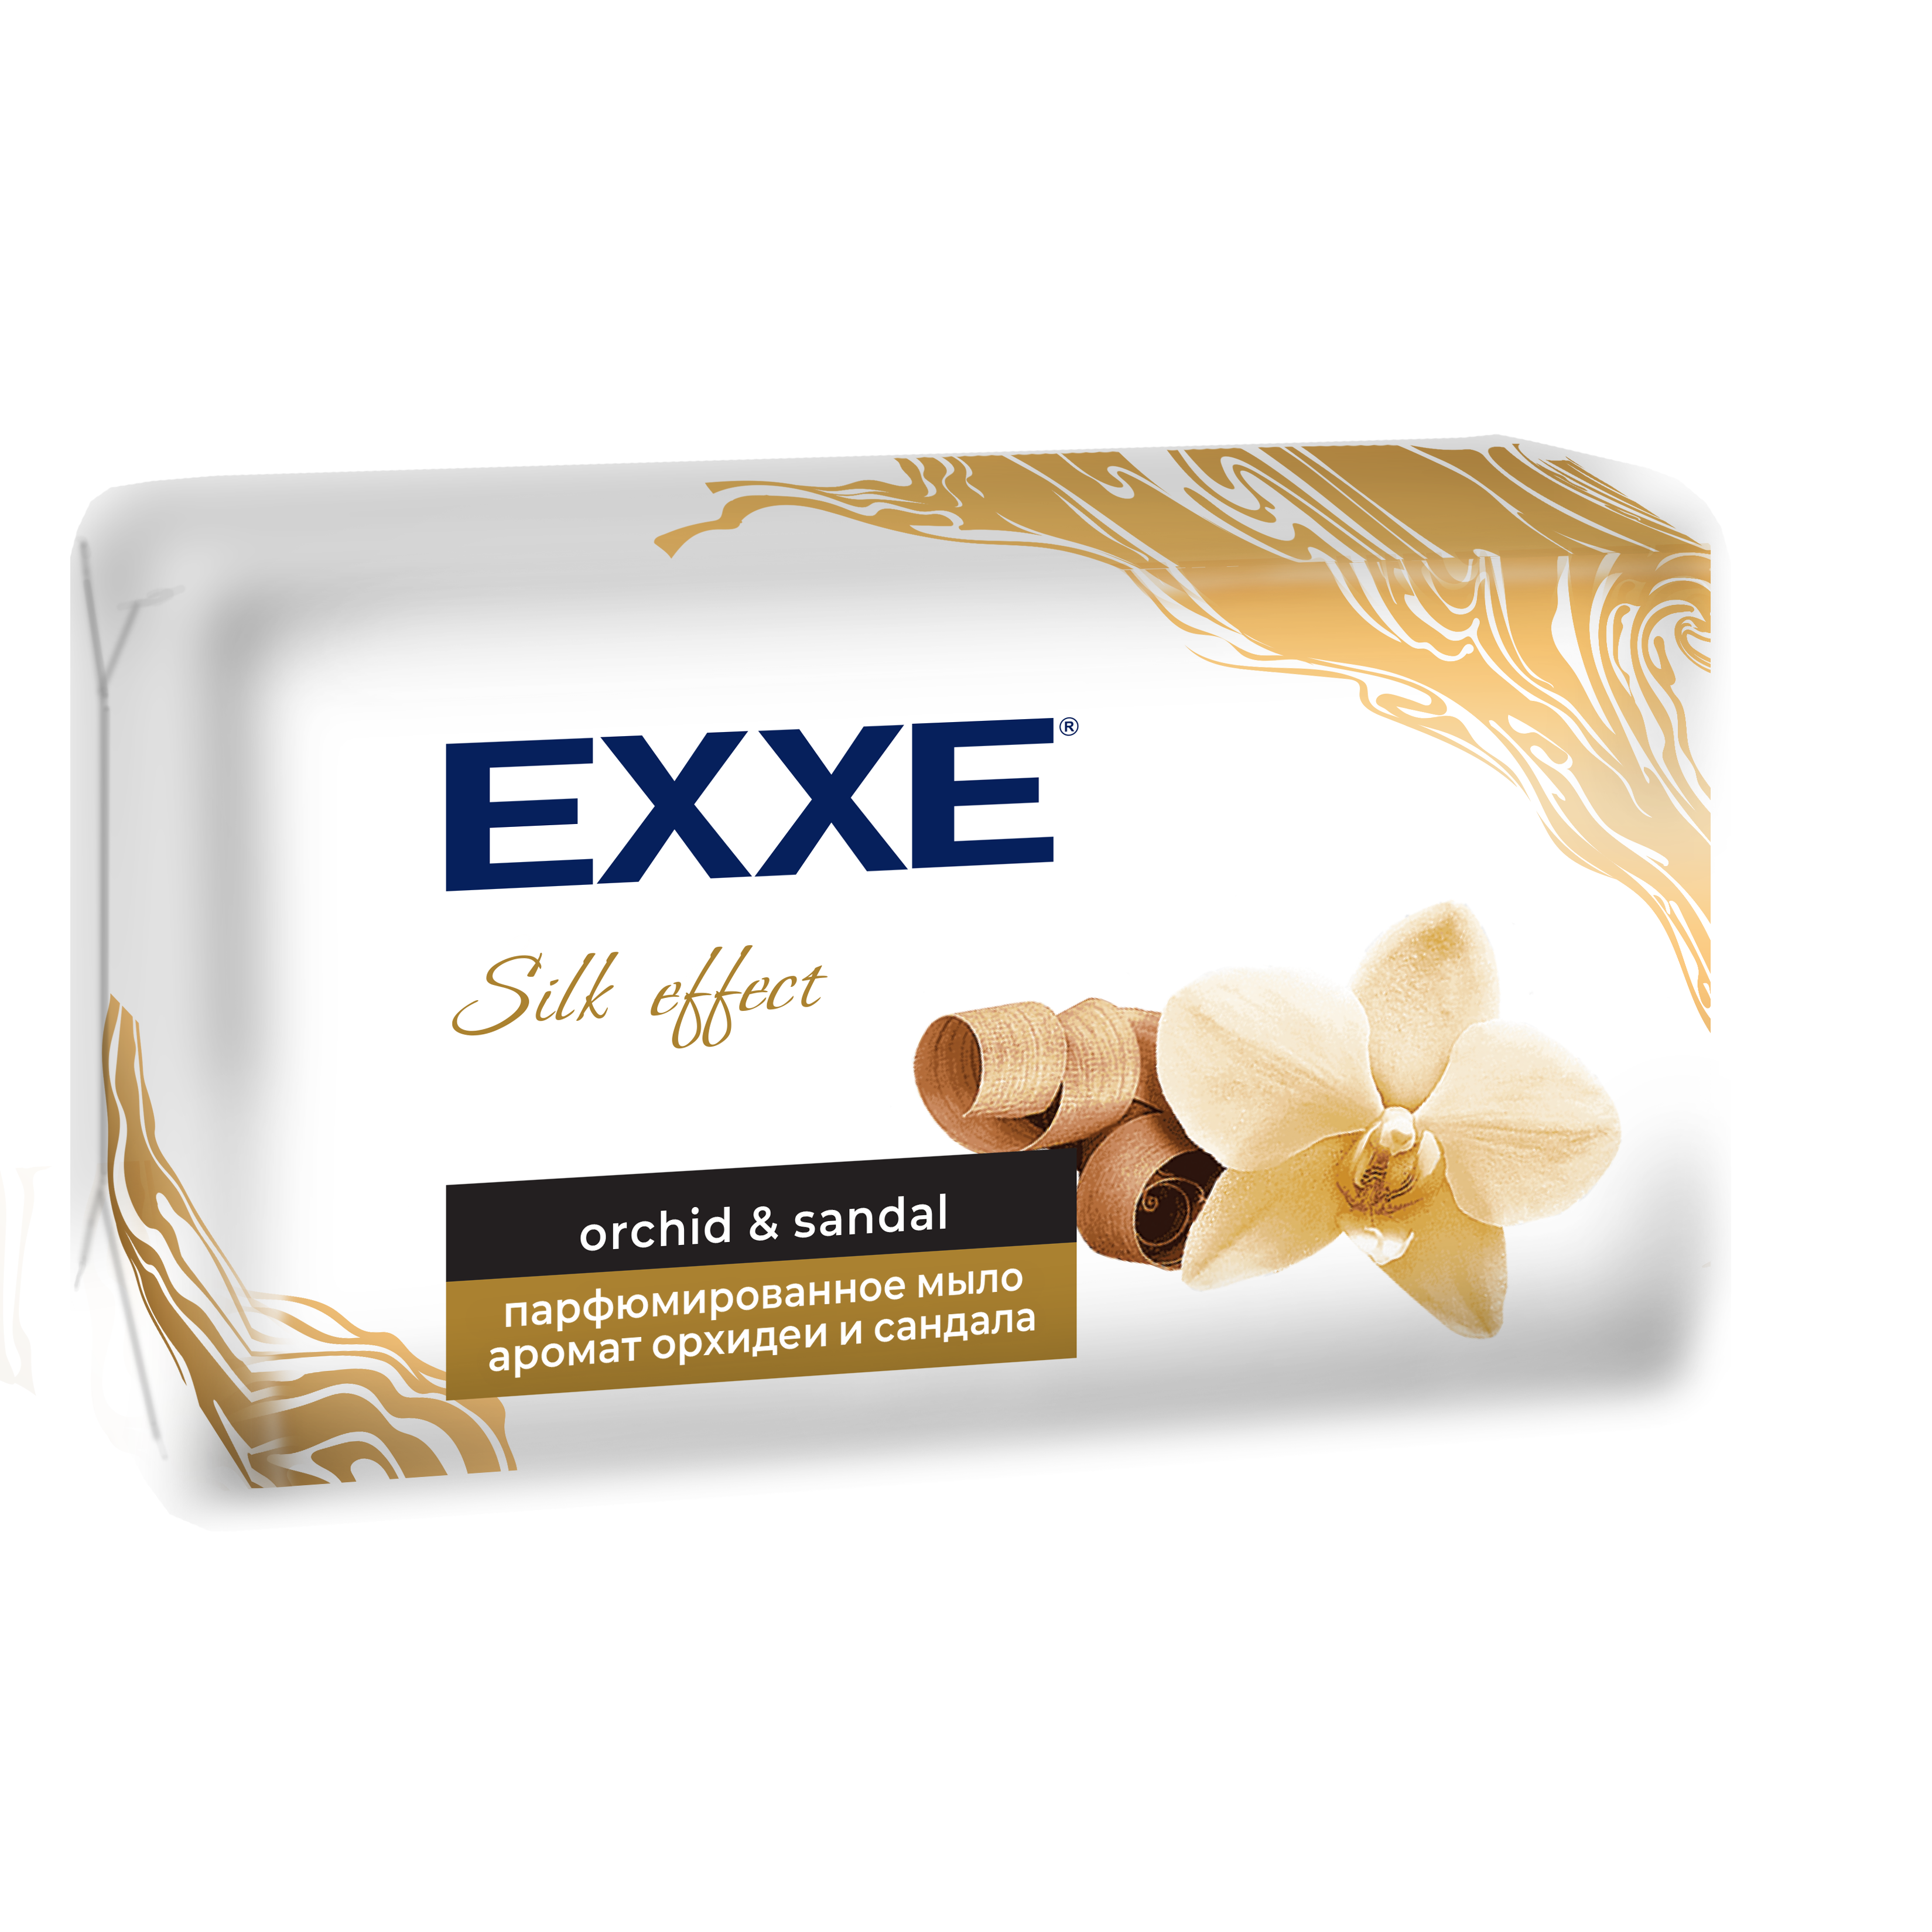 Мыло парфюмированное EXXE Silk Effect аромат Орхидеи и Сандала, 140 г dalan парфюмированное мыло для рук и тела botanica аромат пион 600